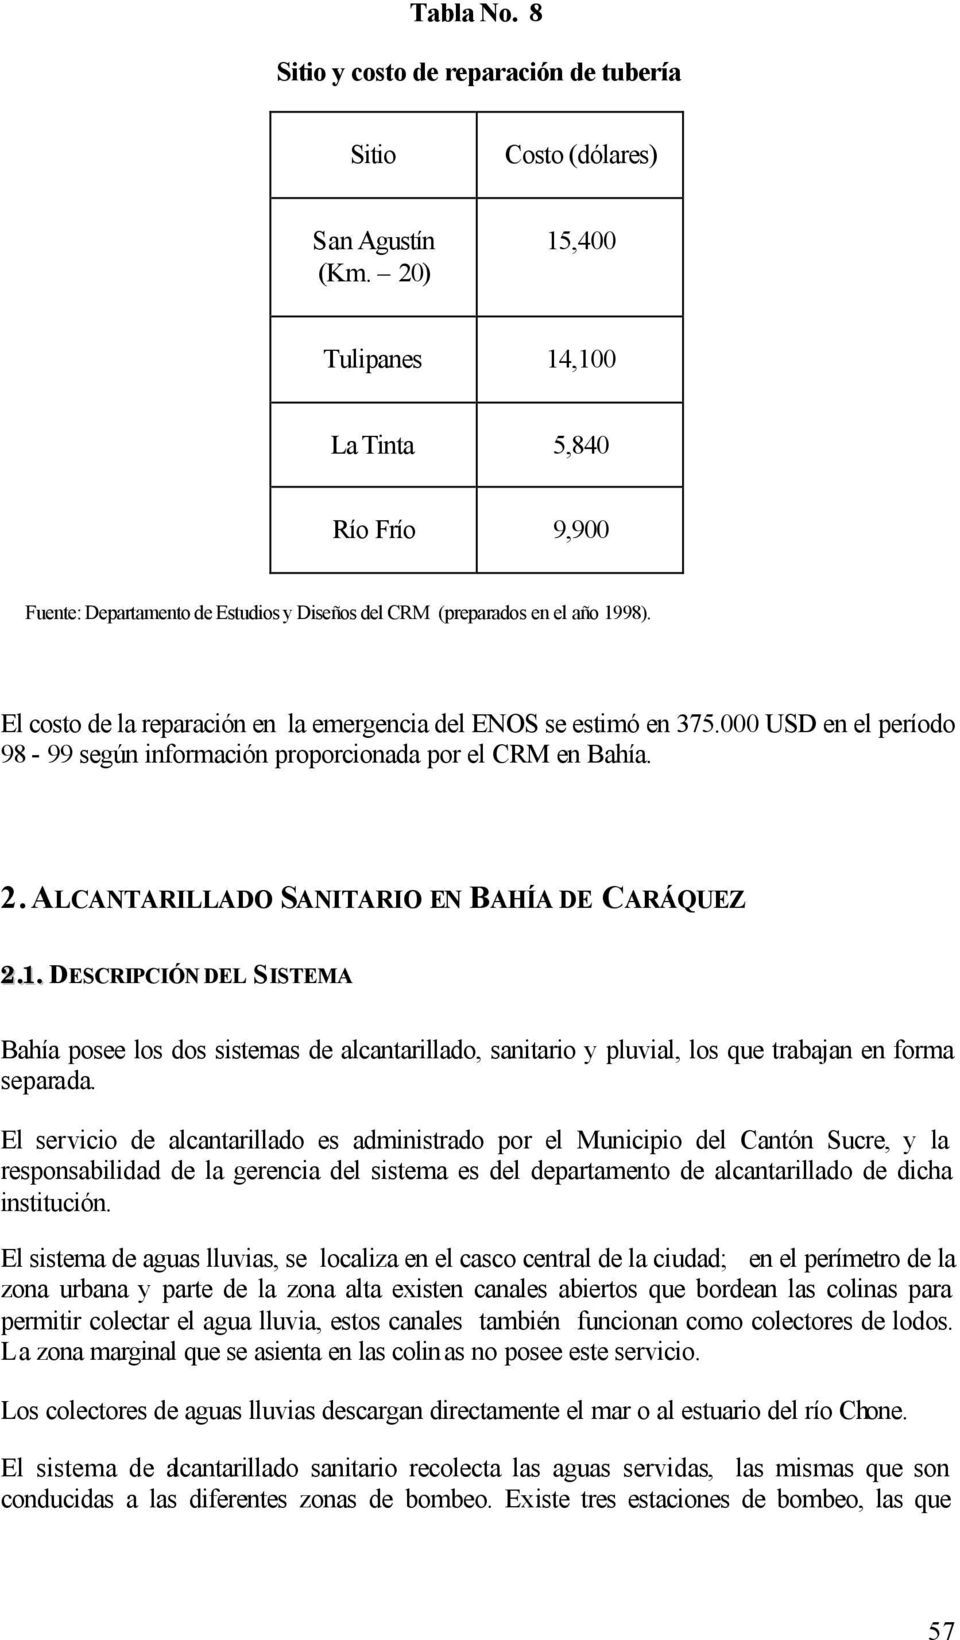 El costo de la reparación en la emergencia del ENOS se estimó en 375.000 USD en el período 98-99 según información proporcionada por el CRM en Bahía. 2.